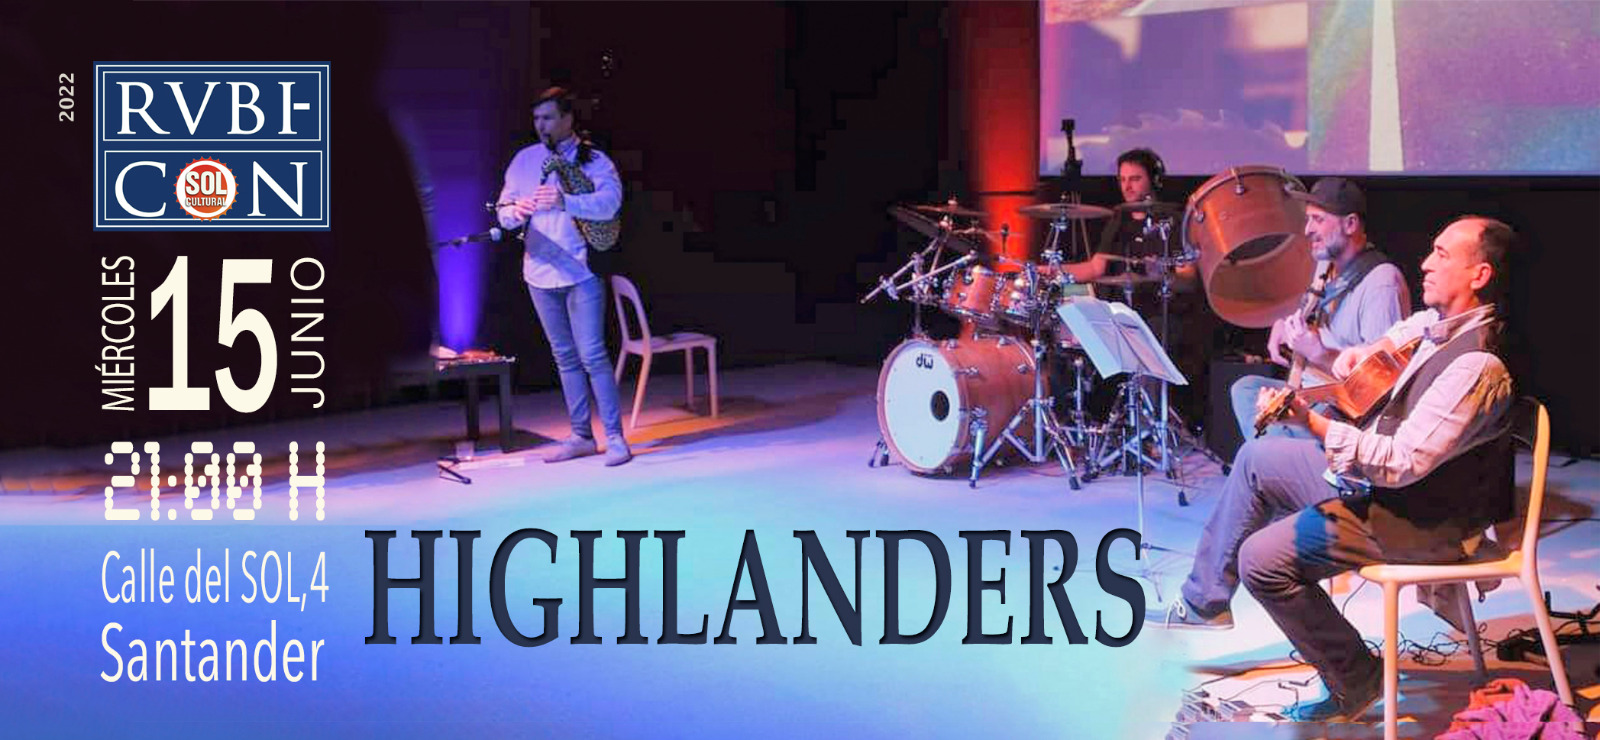 Concierto Highlanders en el Rvbicón